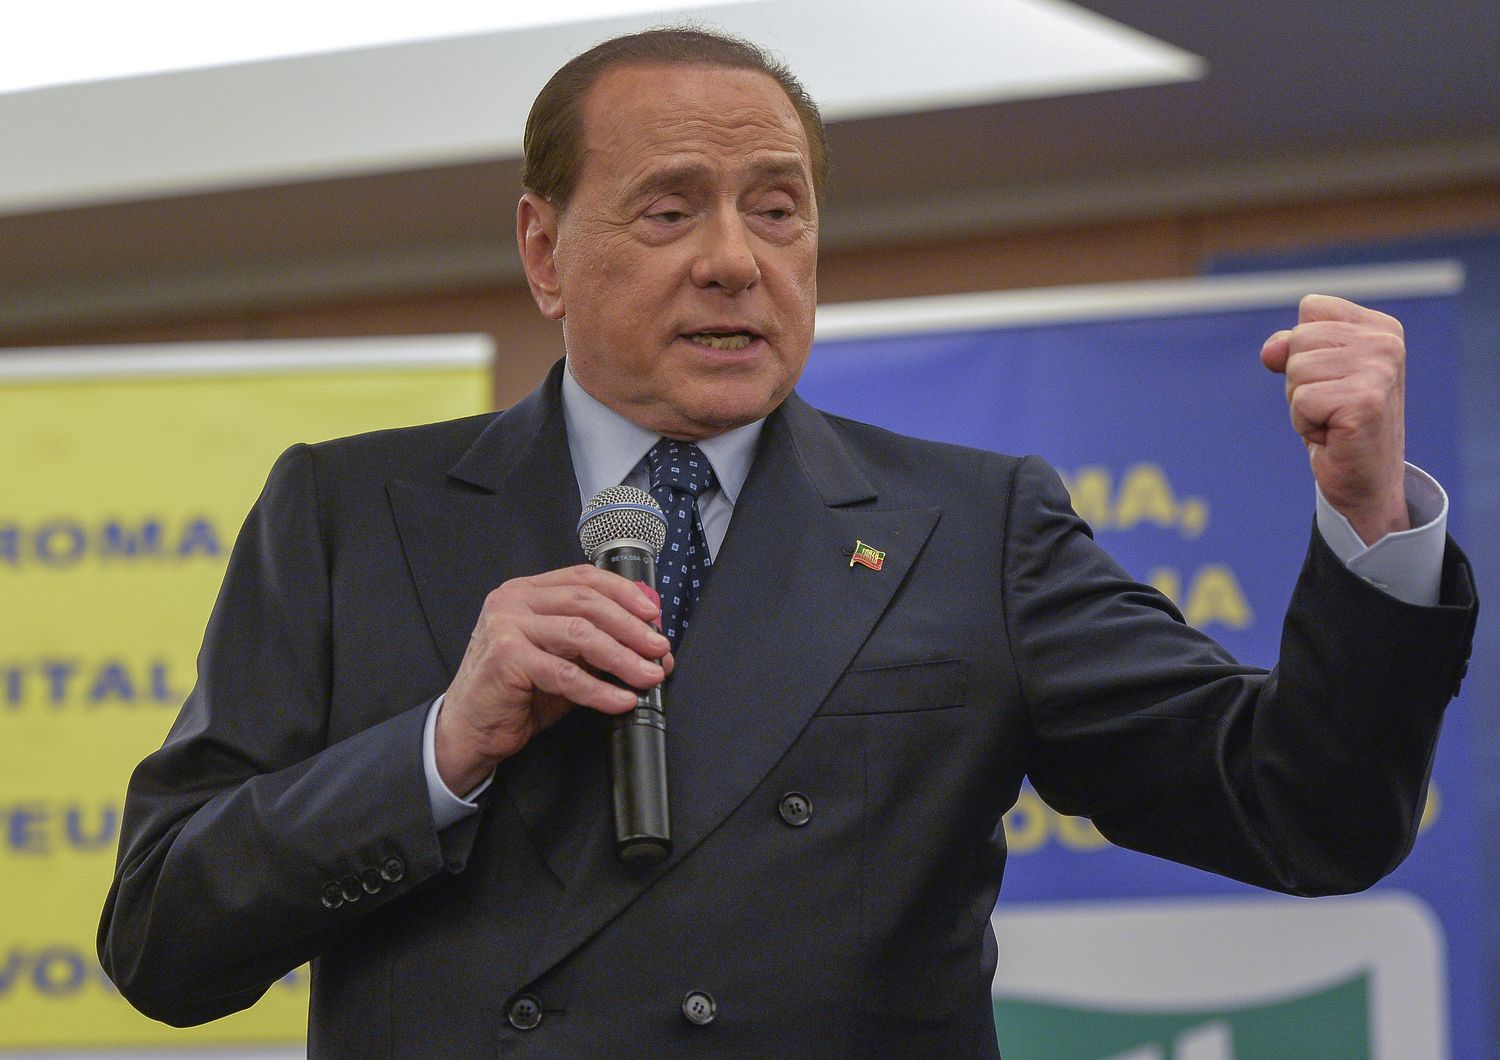 Silvio Berlusconi (Imago)&nbsp;